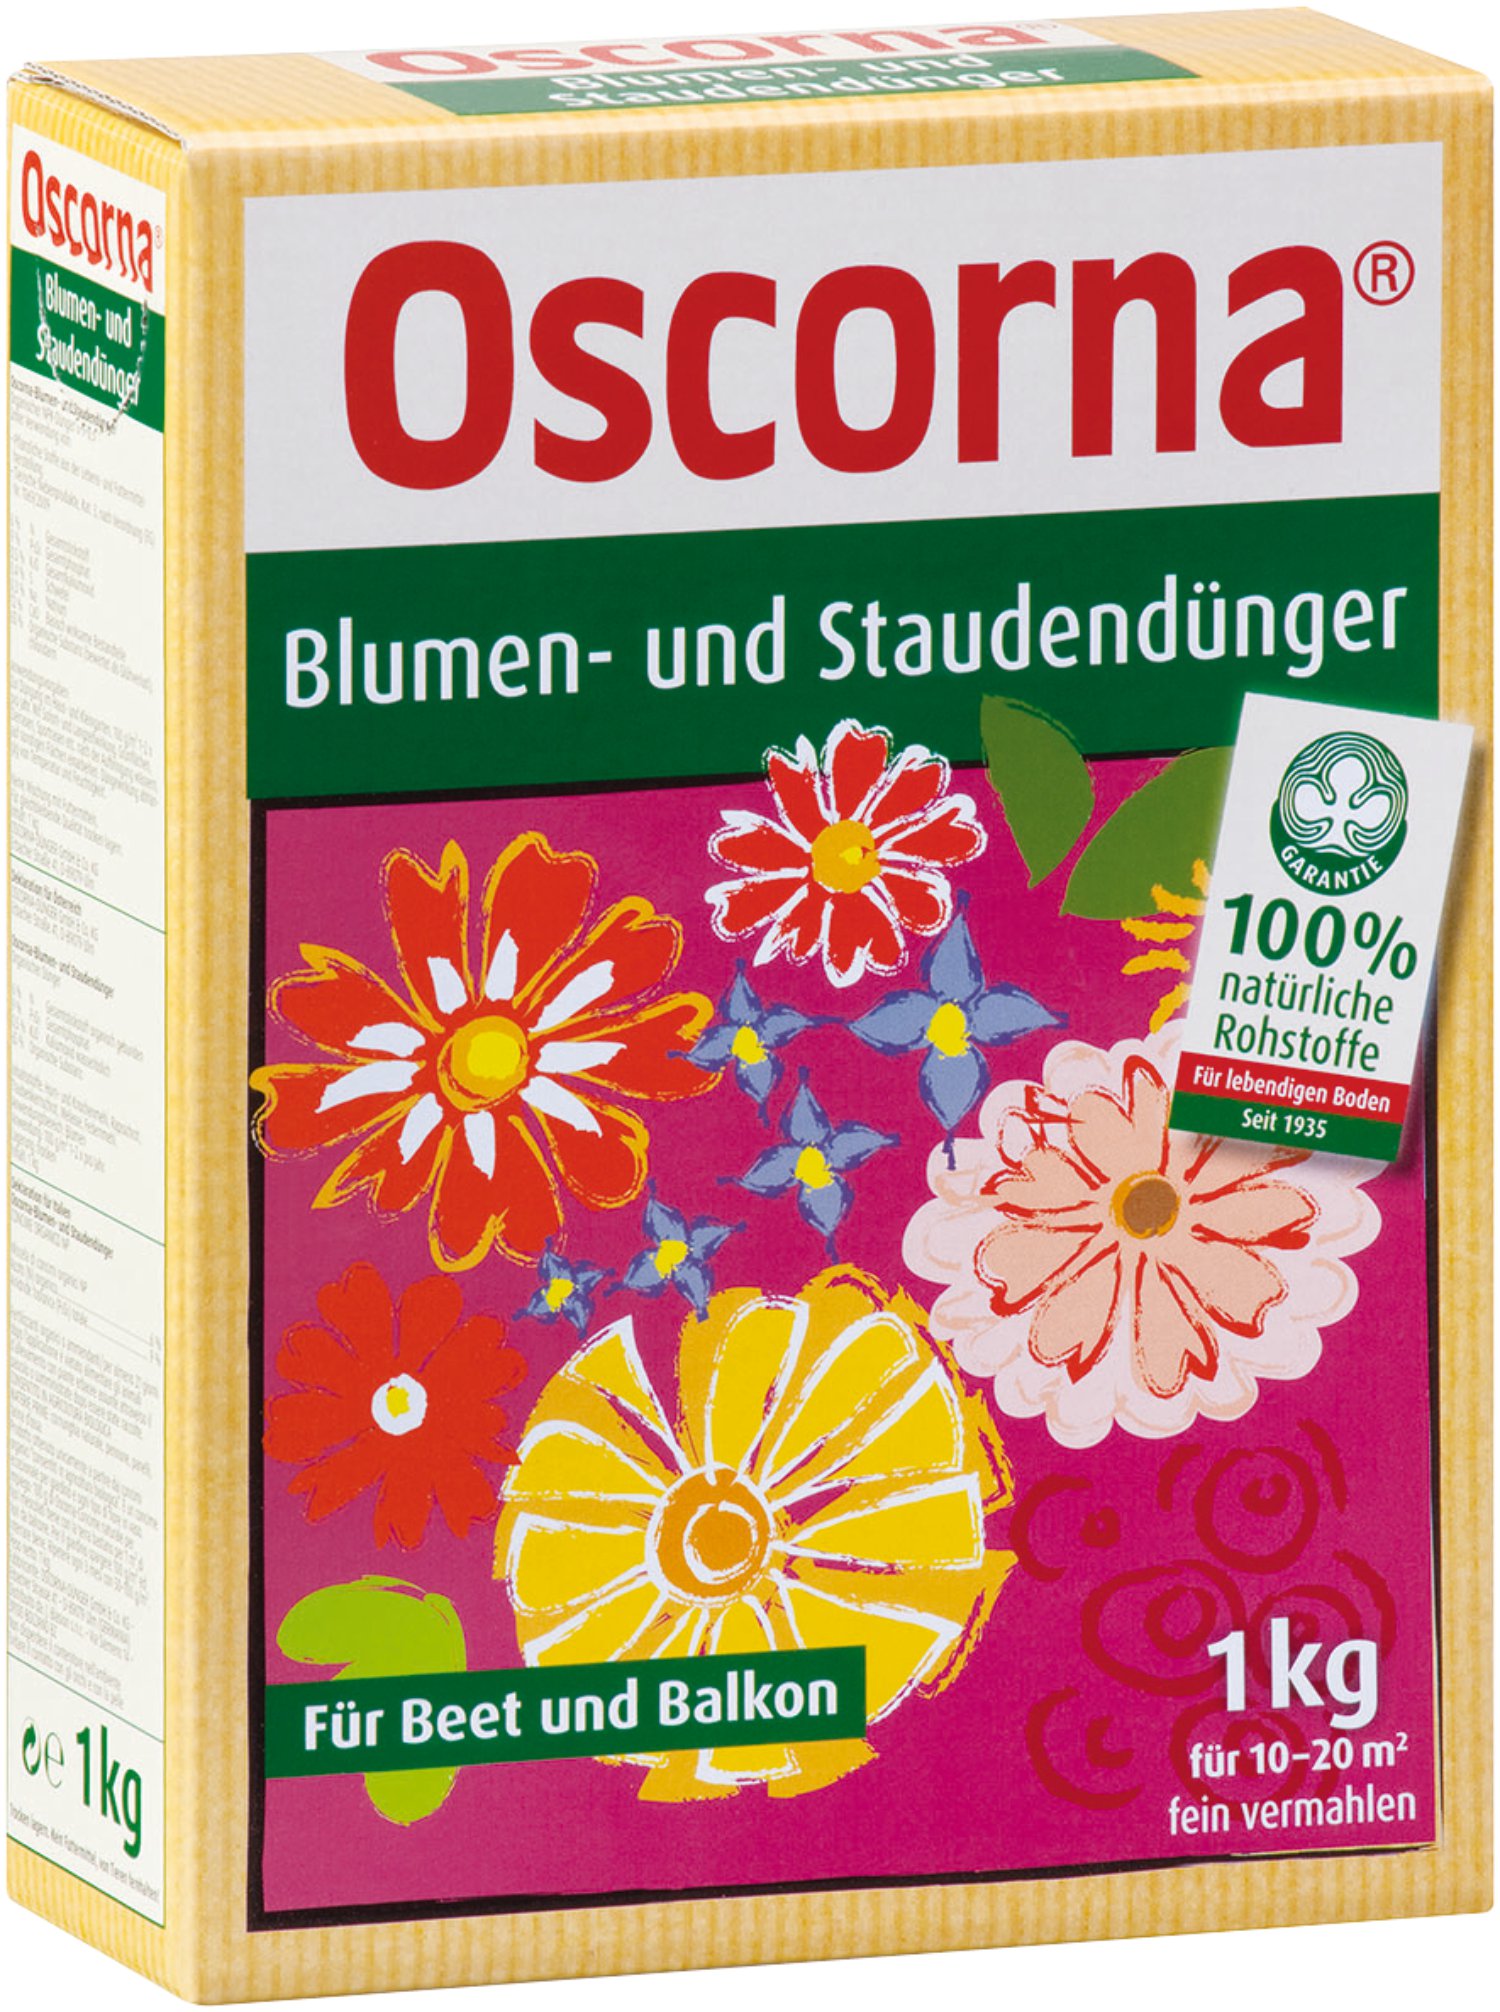 OSCORNA Blumen- und Staudendünger 1 kg